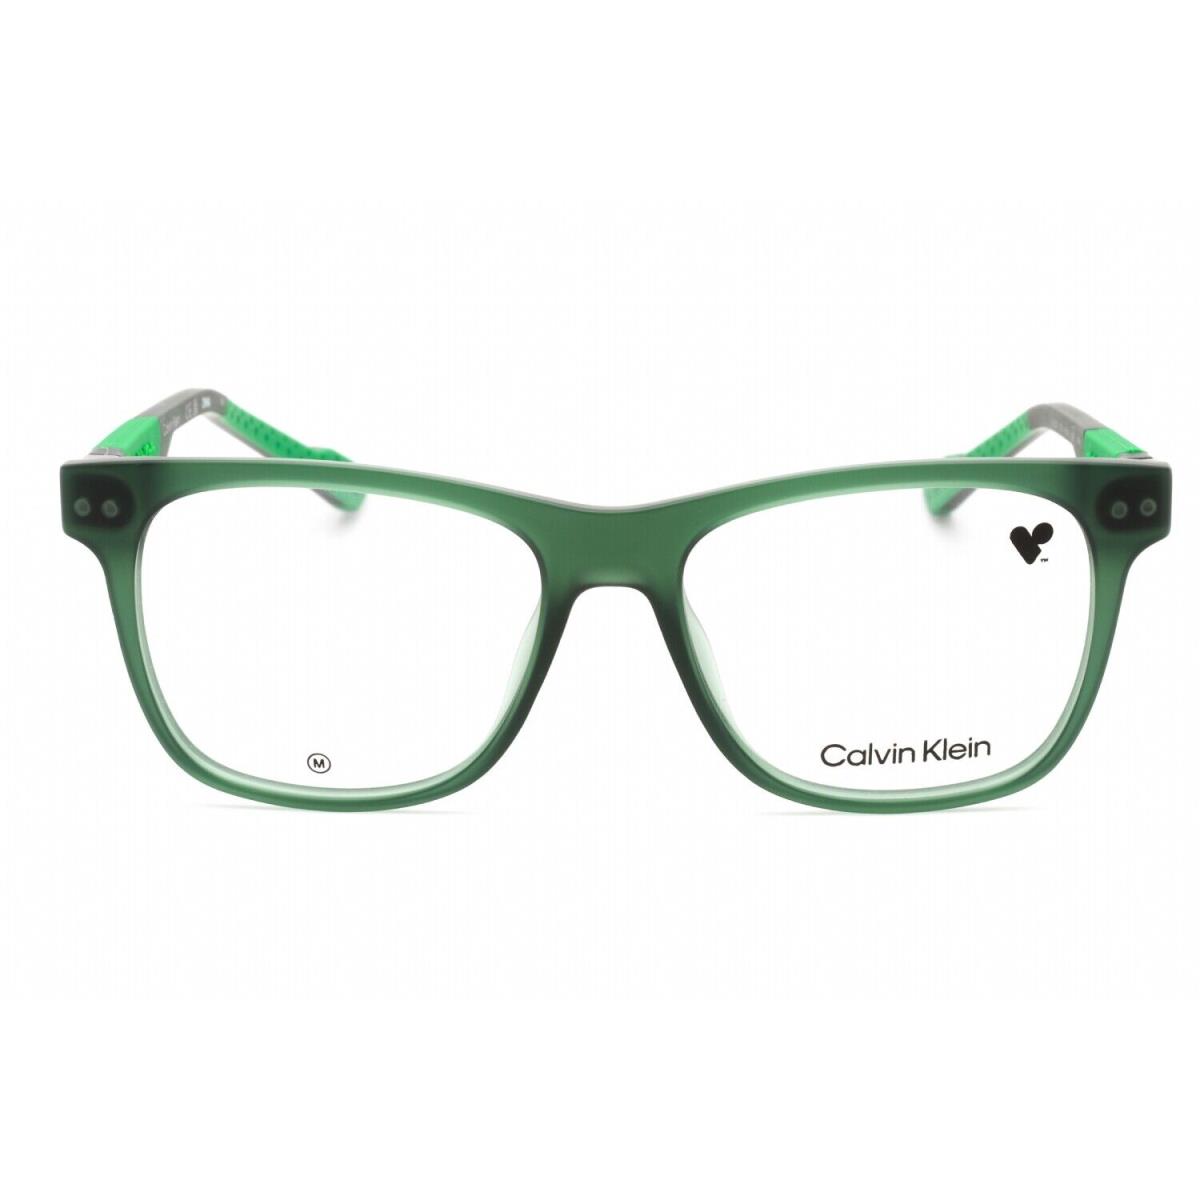 Calvin Klein CK23521 330 Eyeglasses Green Frame 53mm